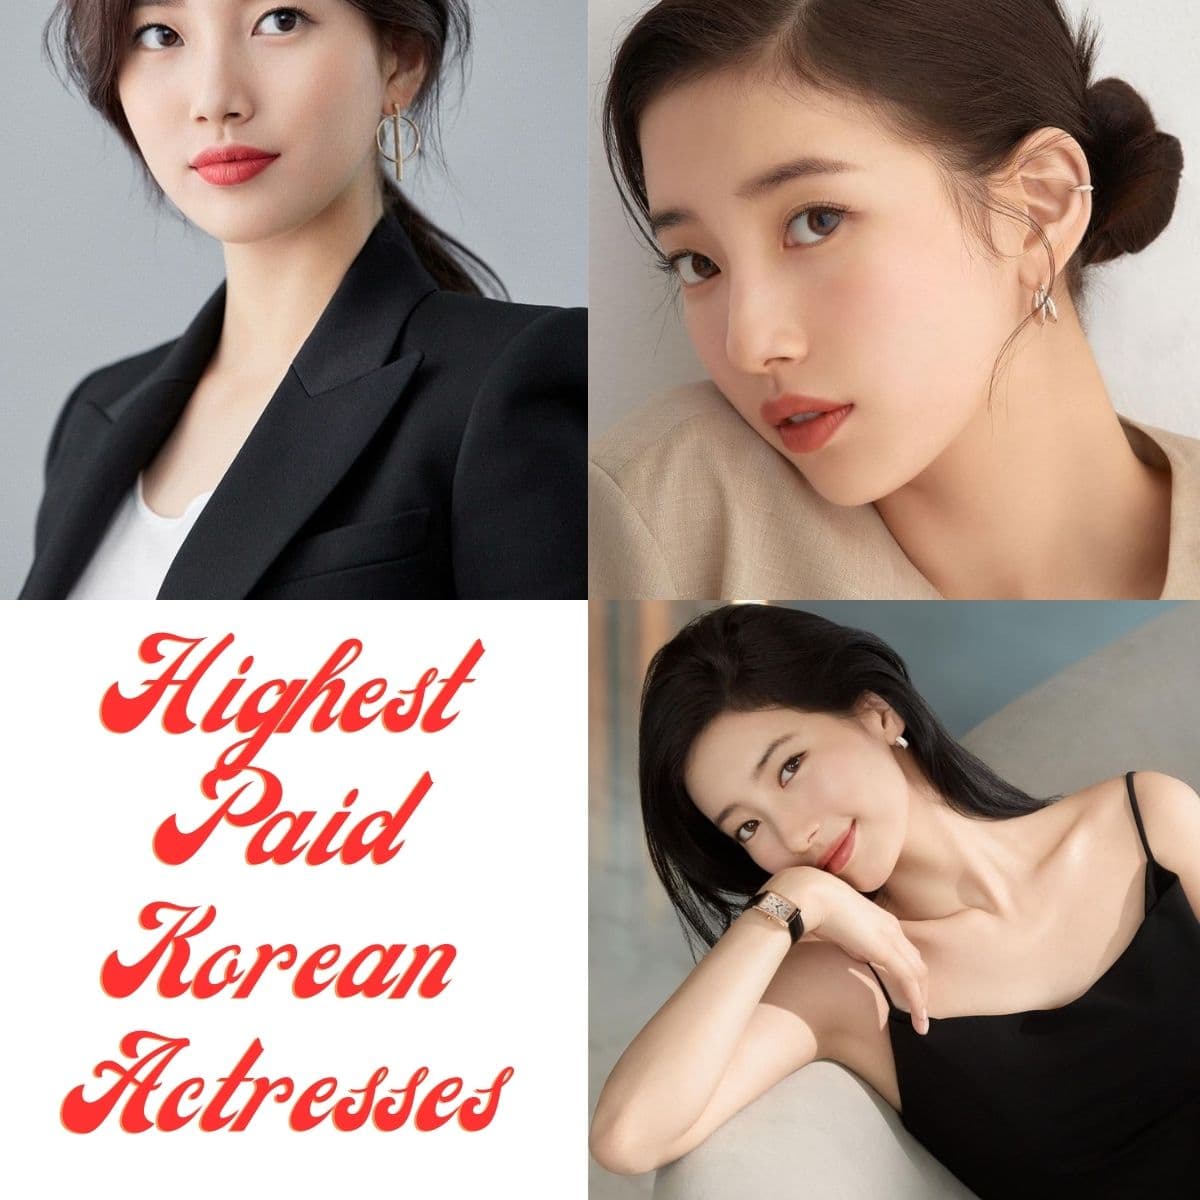 Korean Actresses, Highest Paid Korean Actresses, Actresses, Beautiful actresses